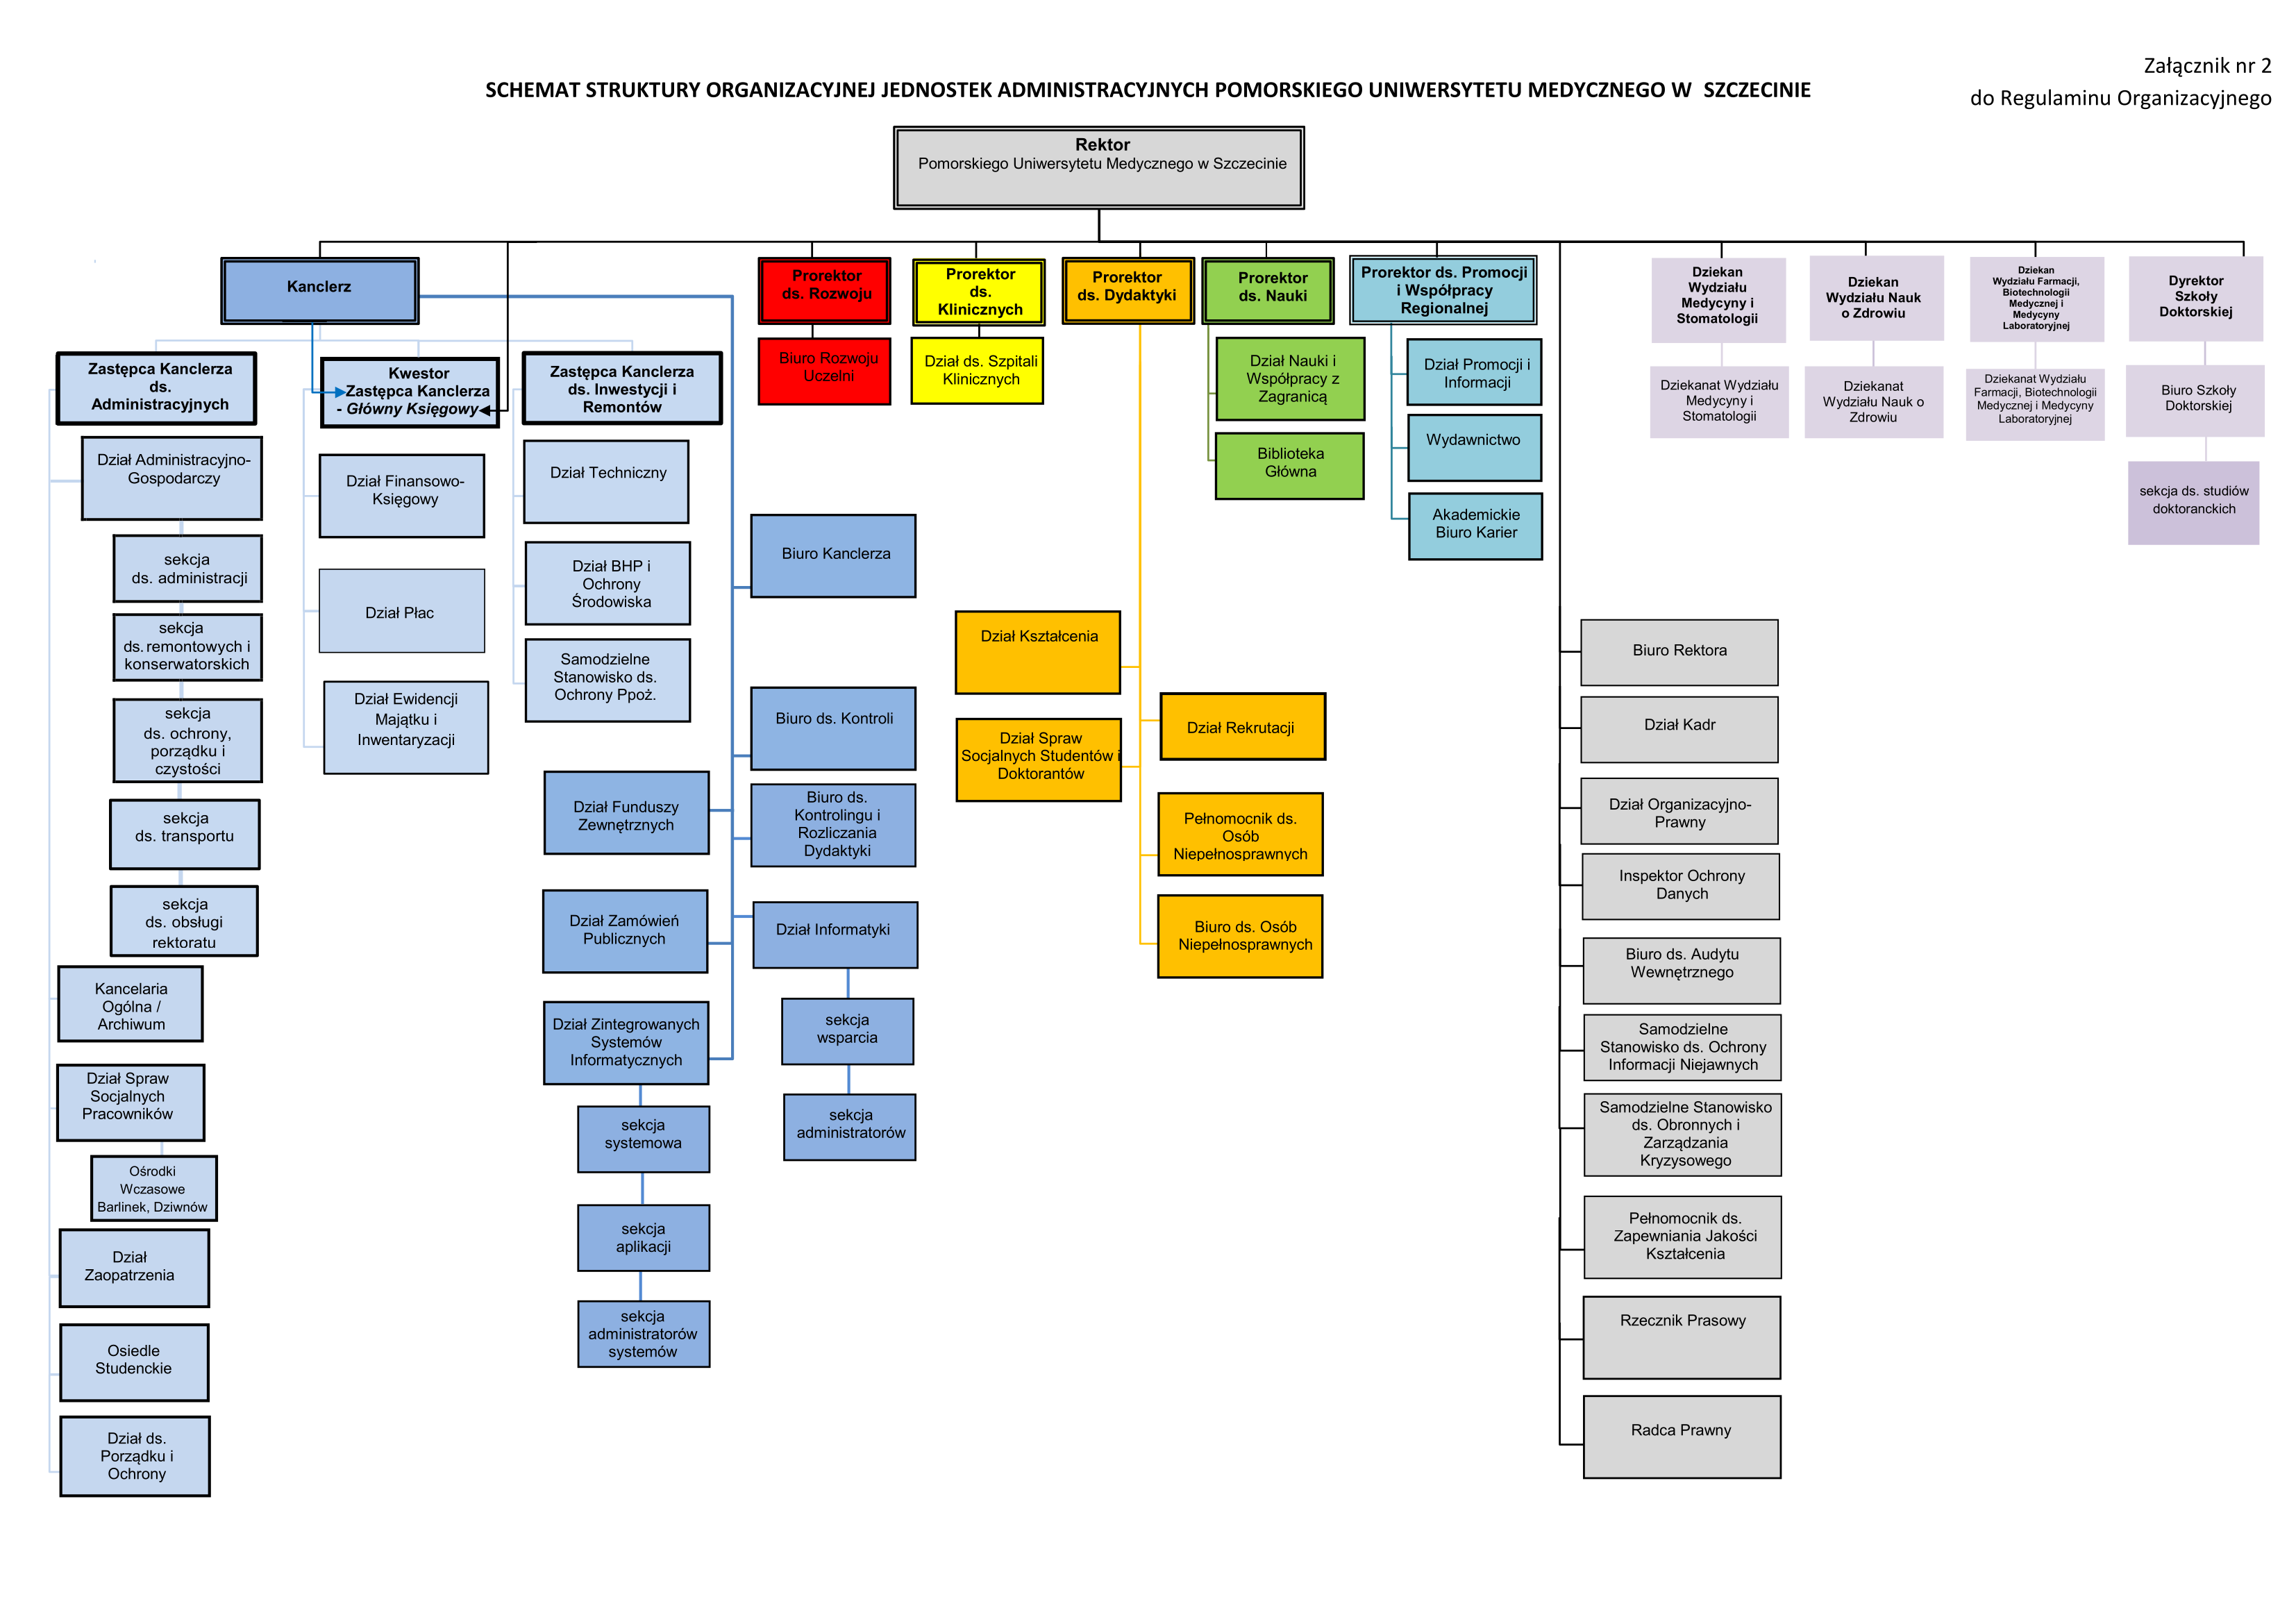 Schemat Struktury Organizacyjnej Jednostek Administracyjnych Pomorskiego Uniwersytetu Medycznego w Szczecinie 